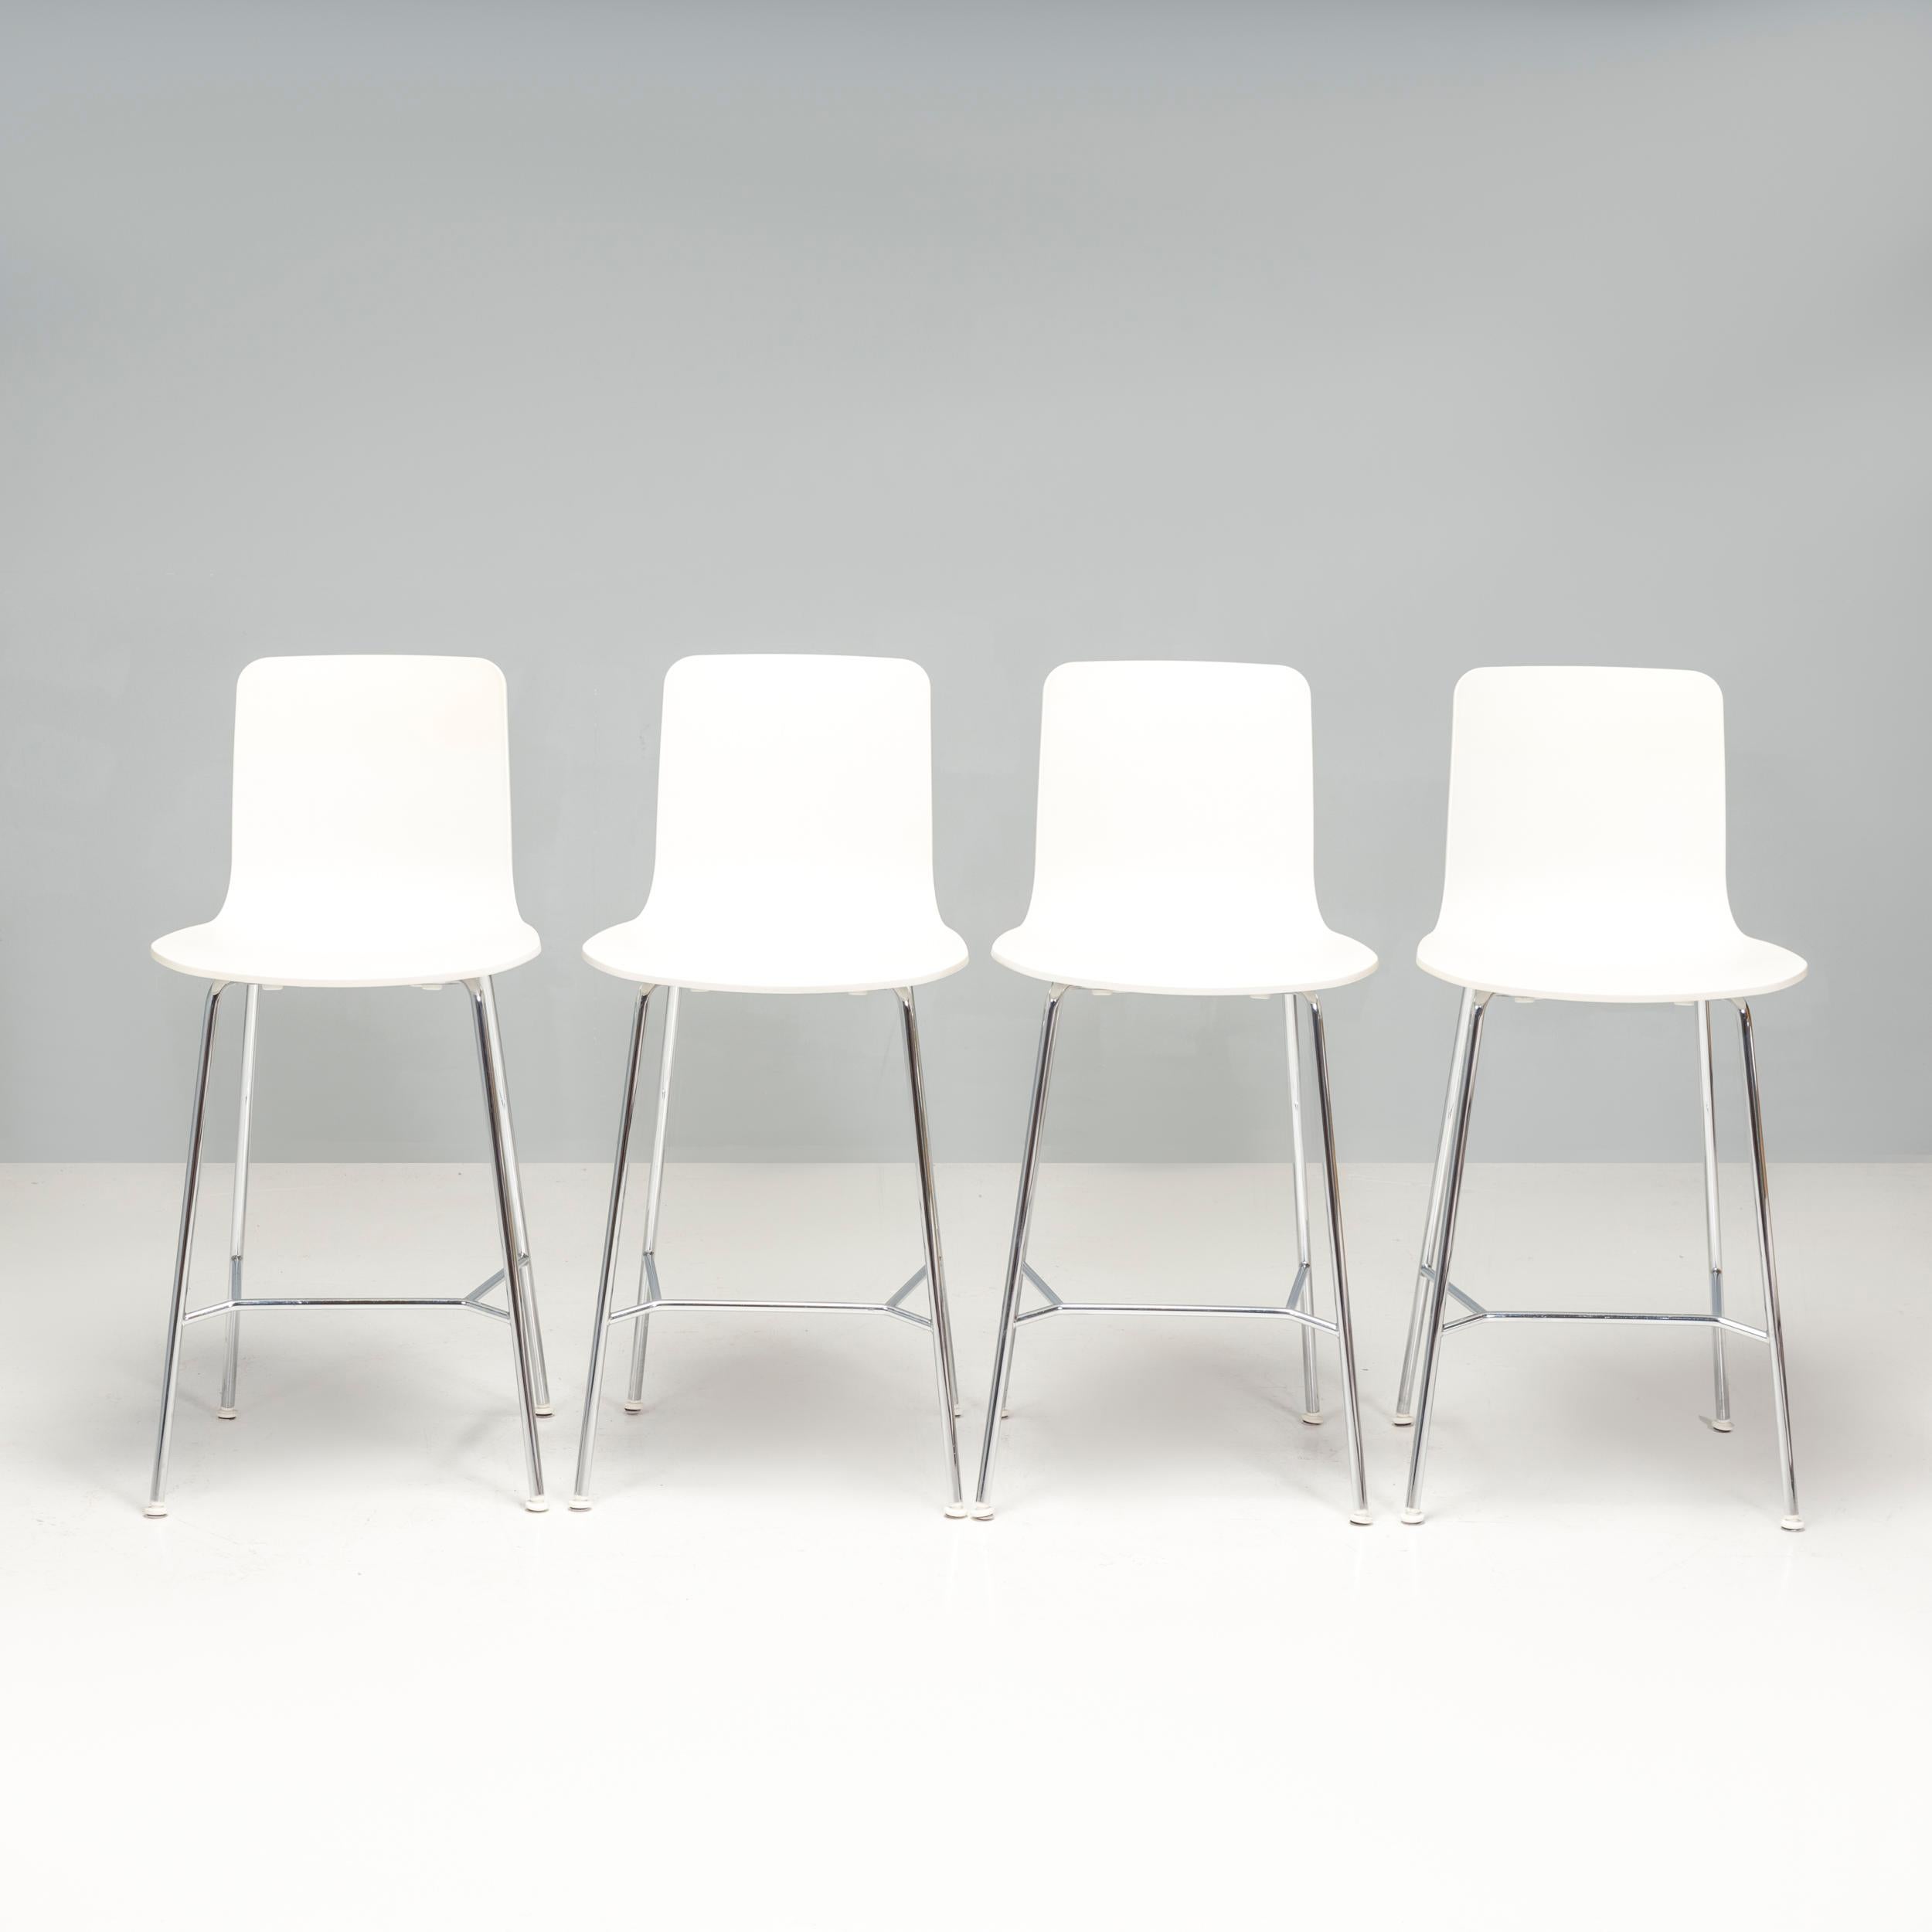 HAL ist Jasper Morrisons Interpretation eines Schalenstuhls in der Tradition des Plastic Chair von Charles und Ray Eames, dessen verschiedene Untergestelle einen vielseitigen Einsatz ermöglichen. 

Diese Barhocker mit einer weißen Sitzschale aus